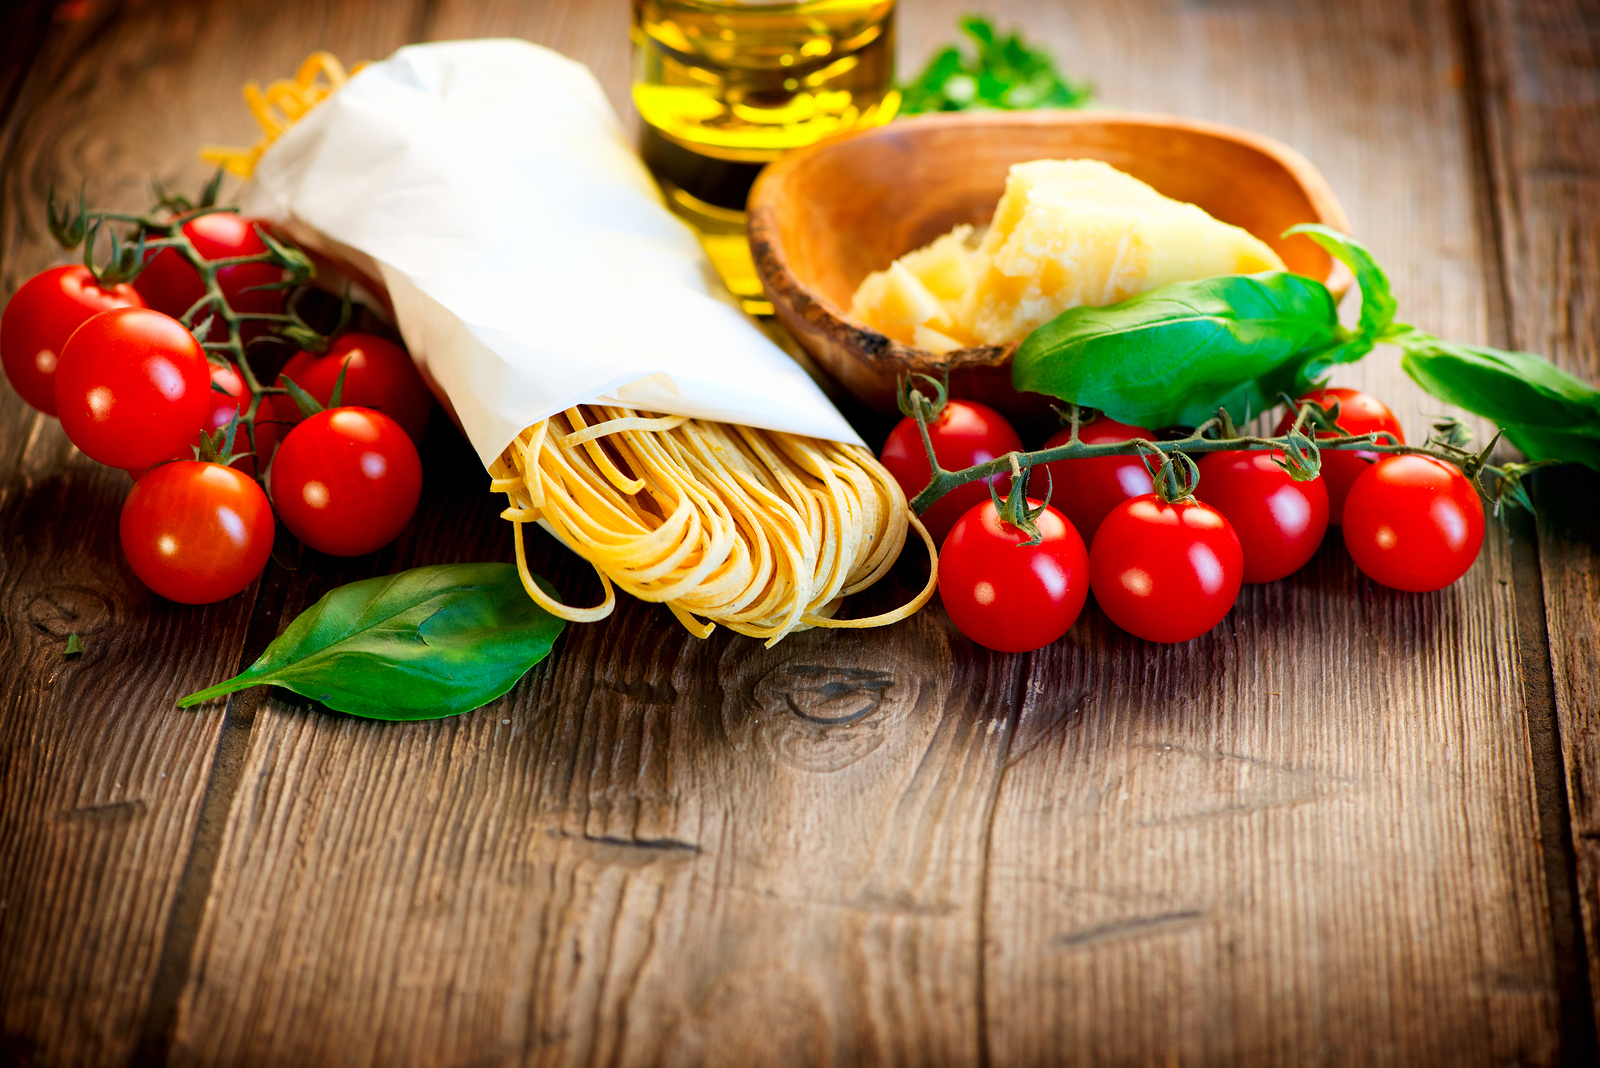  Výskumy zamerané na stredomorskú stravu dokázali, že môže znížiť riziko vzniku cukrovky typu 2